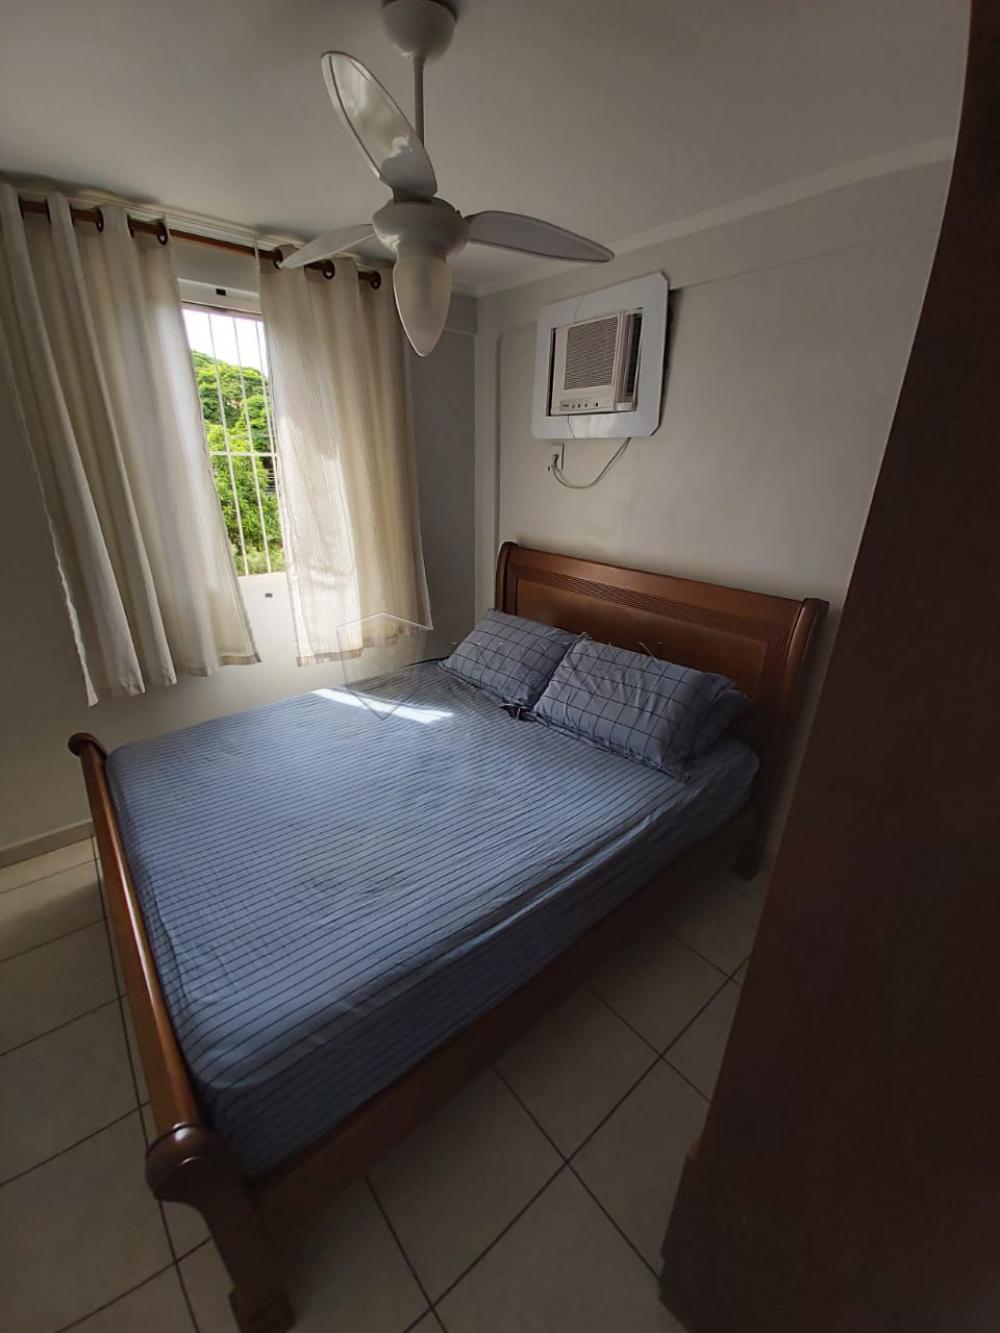 Comprar Apartamento / Padrão em Ribeirão Preto R$ 140.000,00 - Foto 1